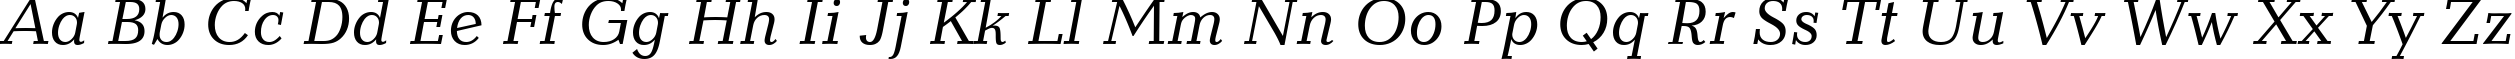 Пример написания английского алфавита шрифтом Candida Italic BT